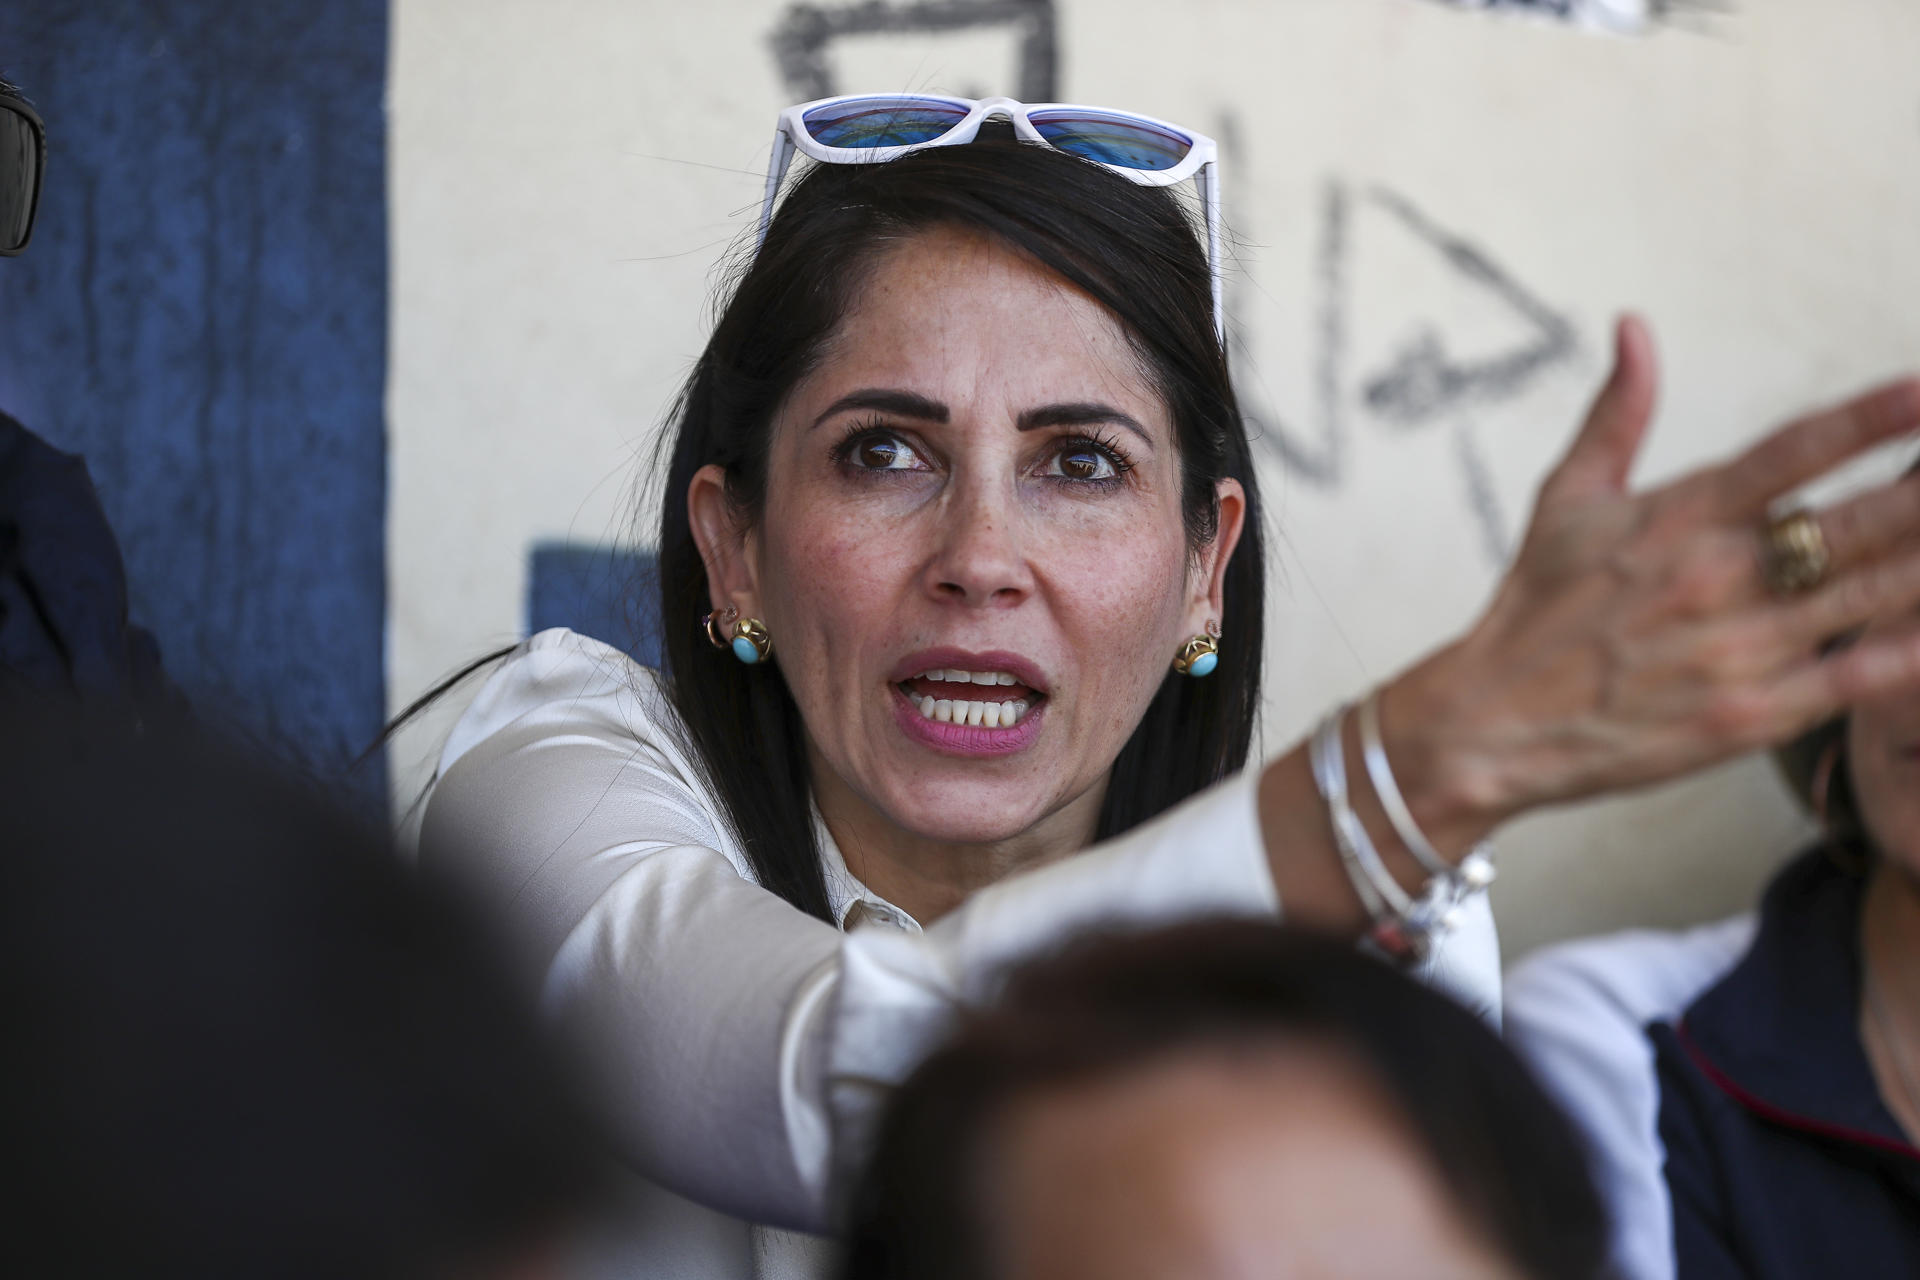 Candidata correísta Luisa González denunció amenazas de muerte en Ecuador